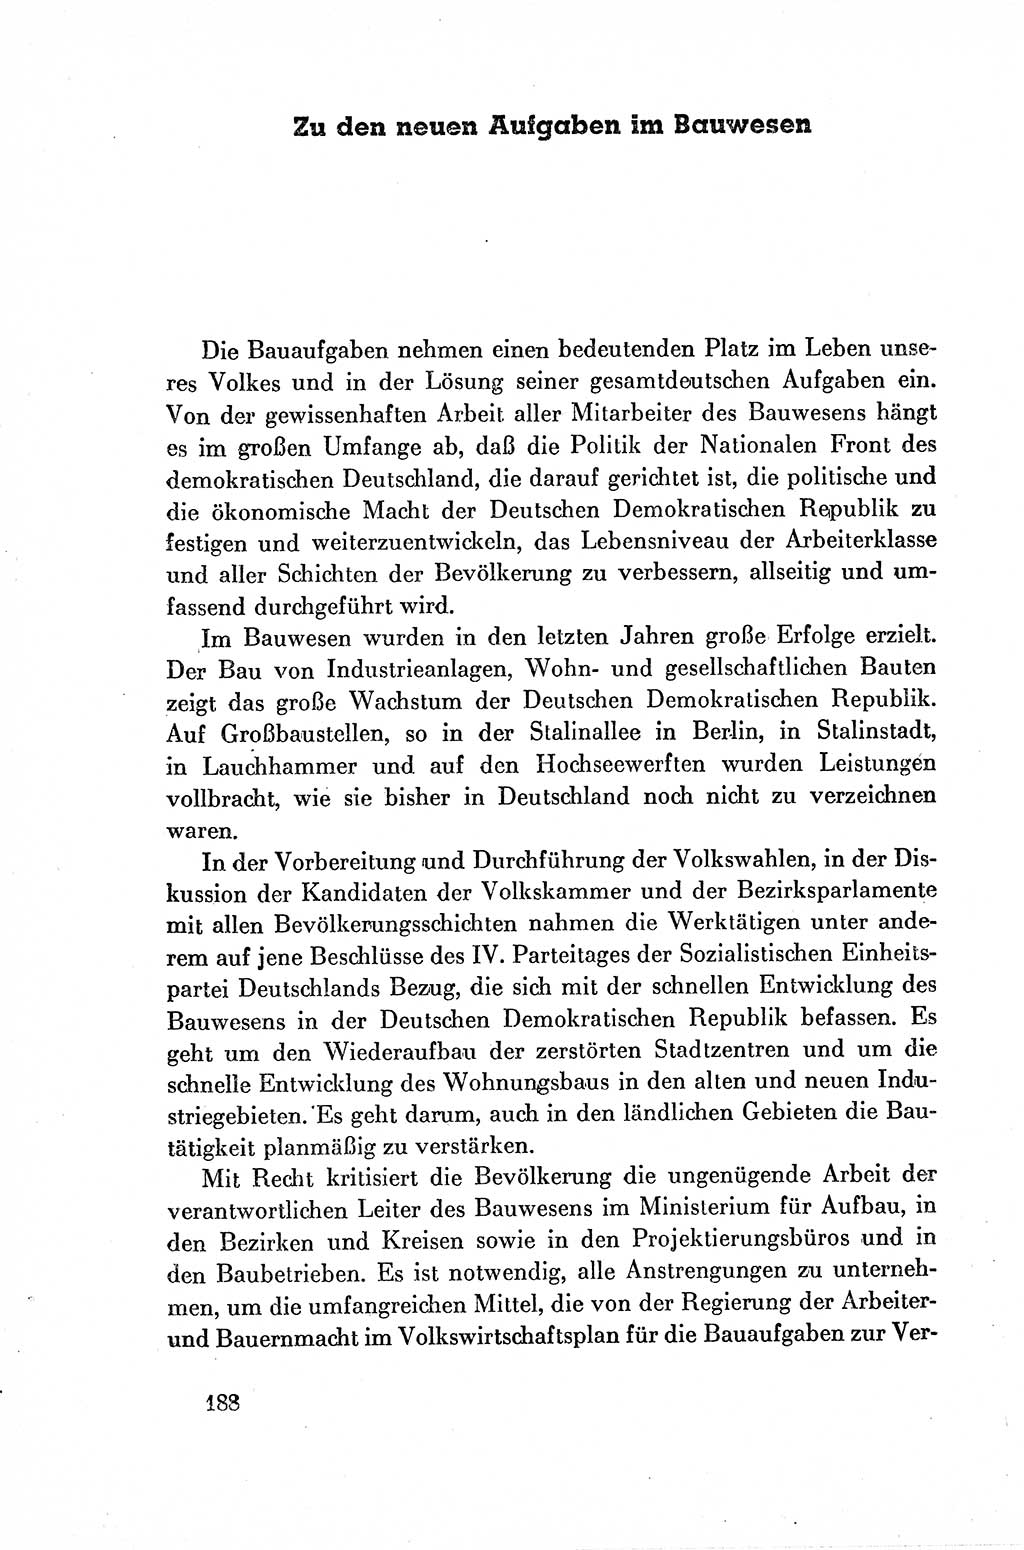 Dokumente der Sozialistischen Einheitspartei Deutschlands (SED) [Deutsche Demokratische Republik (DDR)] 1954-1955, Seite 188 (Dok. SED DDR 1954-1955, S. 188)